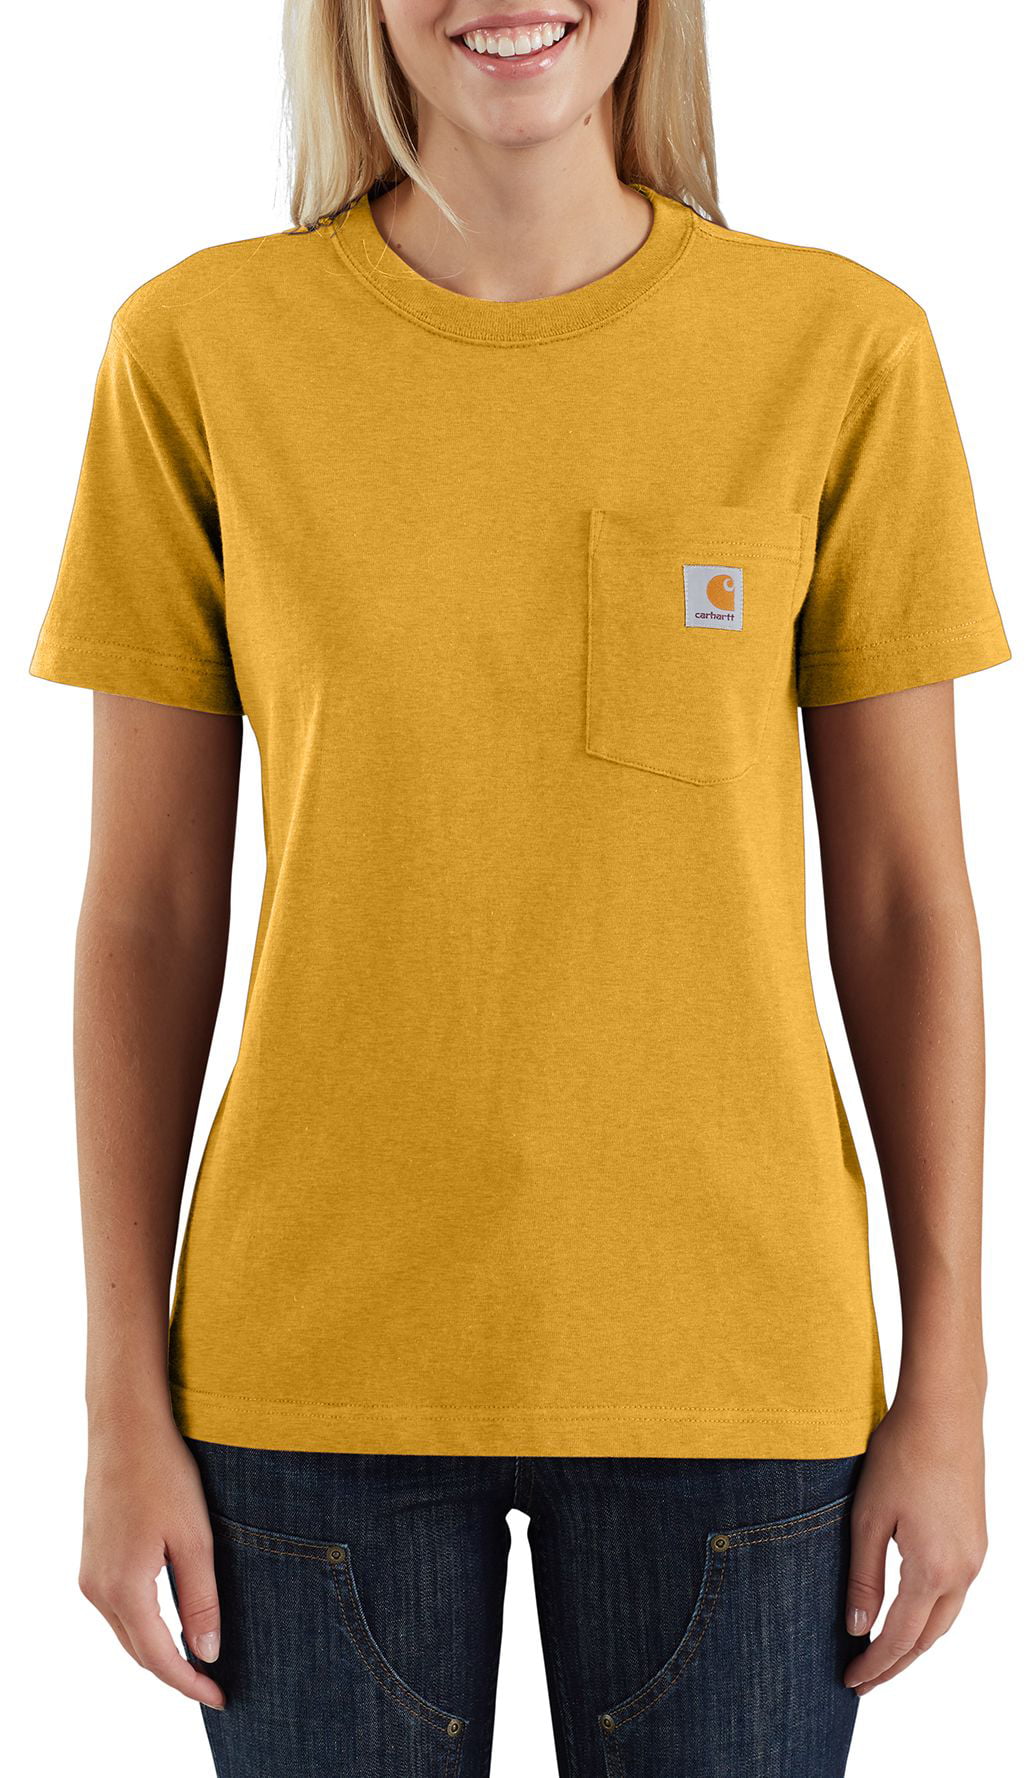 Carhartt - Carhartt Women's Workwear Pocket T-Shirt - Walmart.com ...